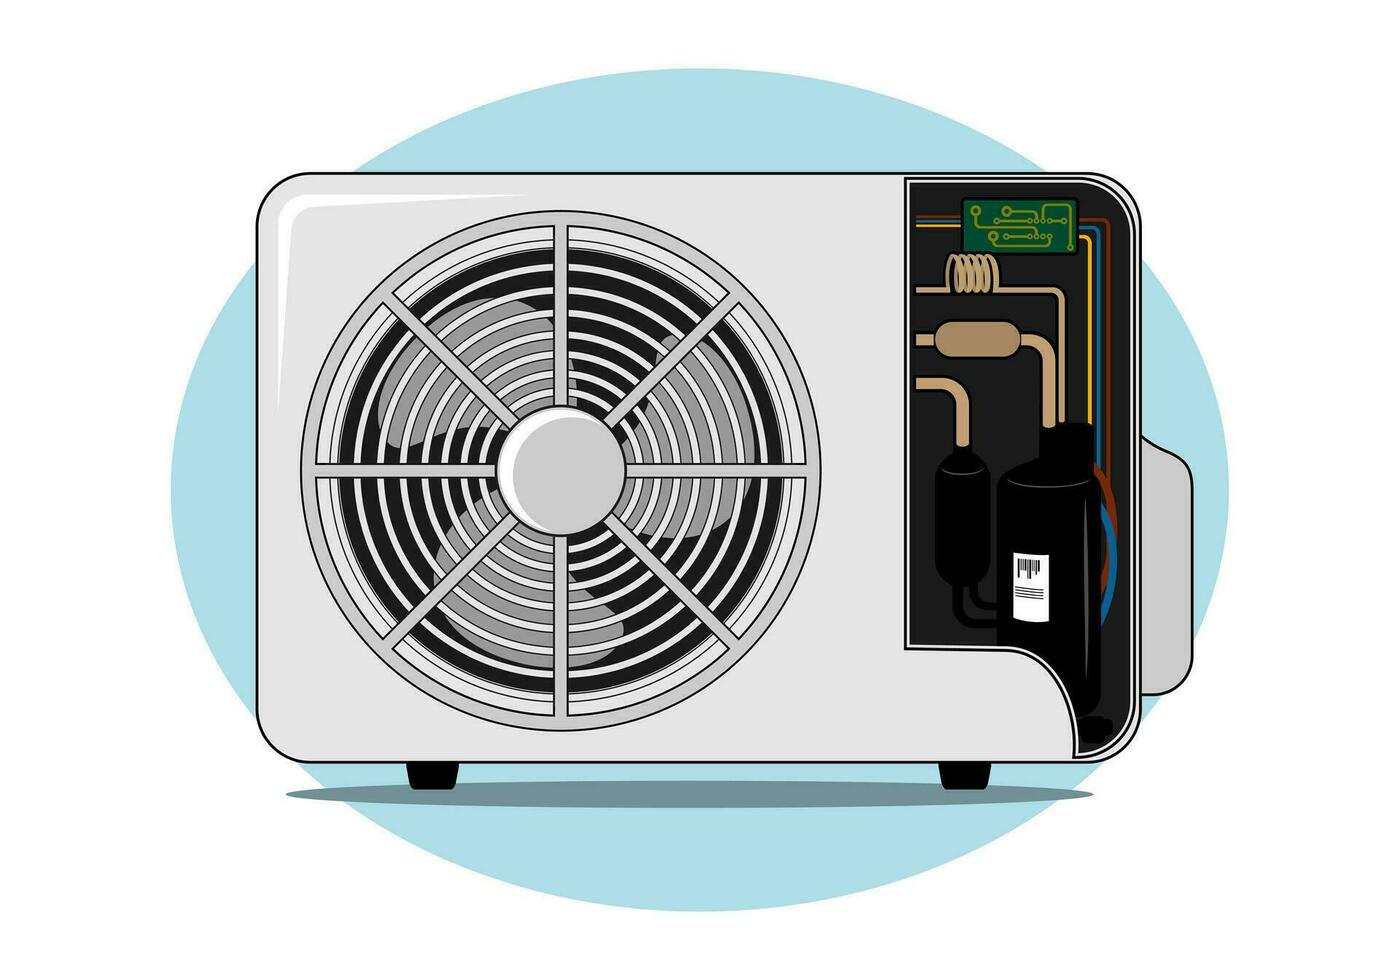 lucht conditioner condensor ontwerp illustratie vector